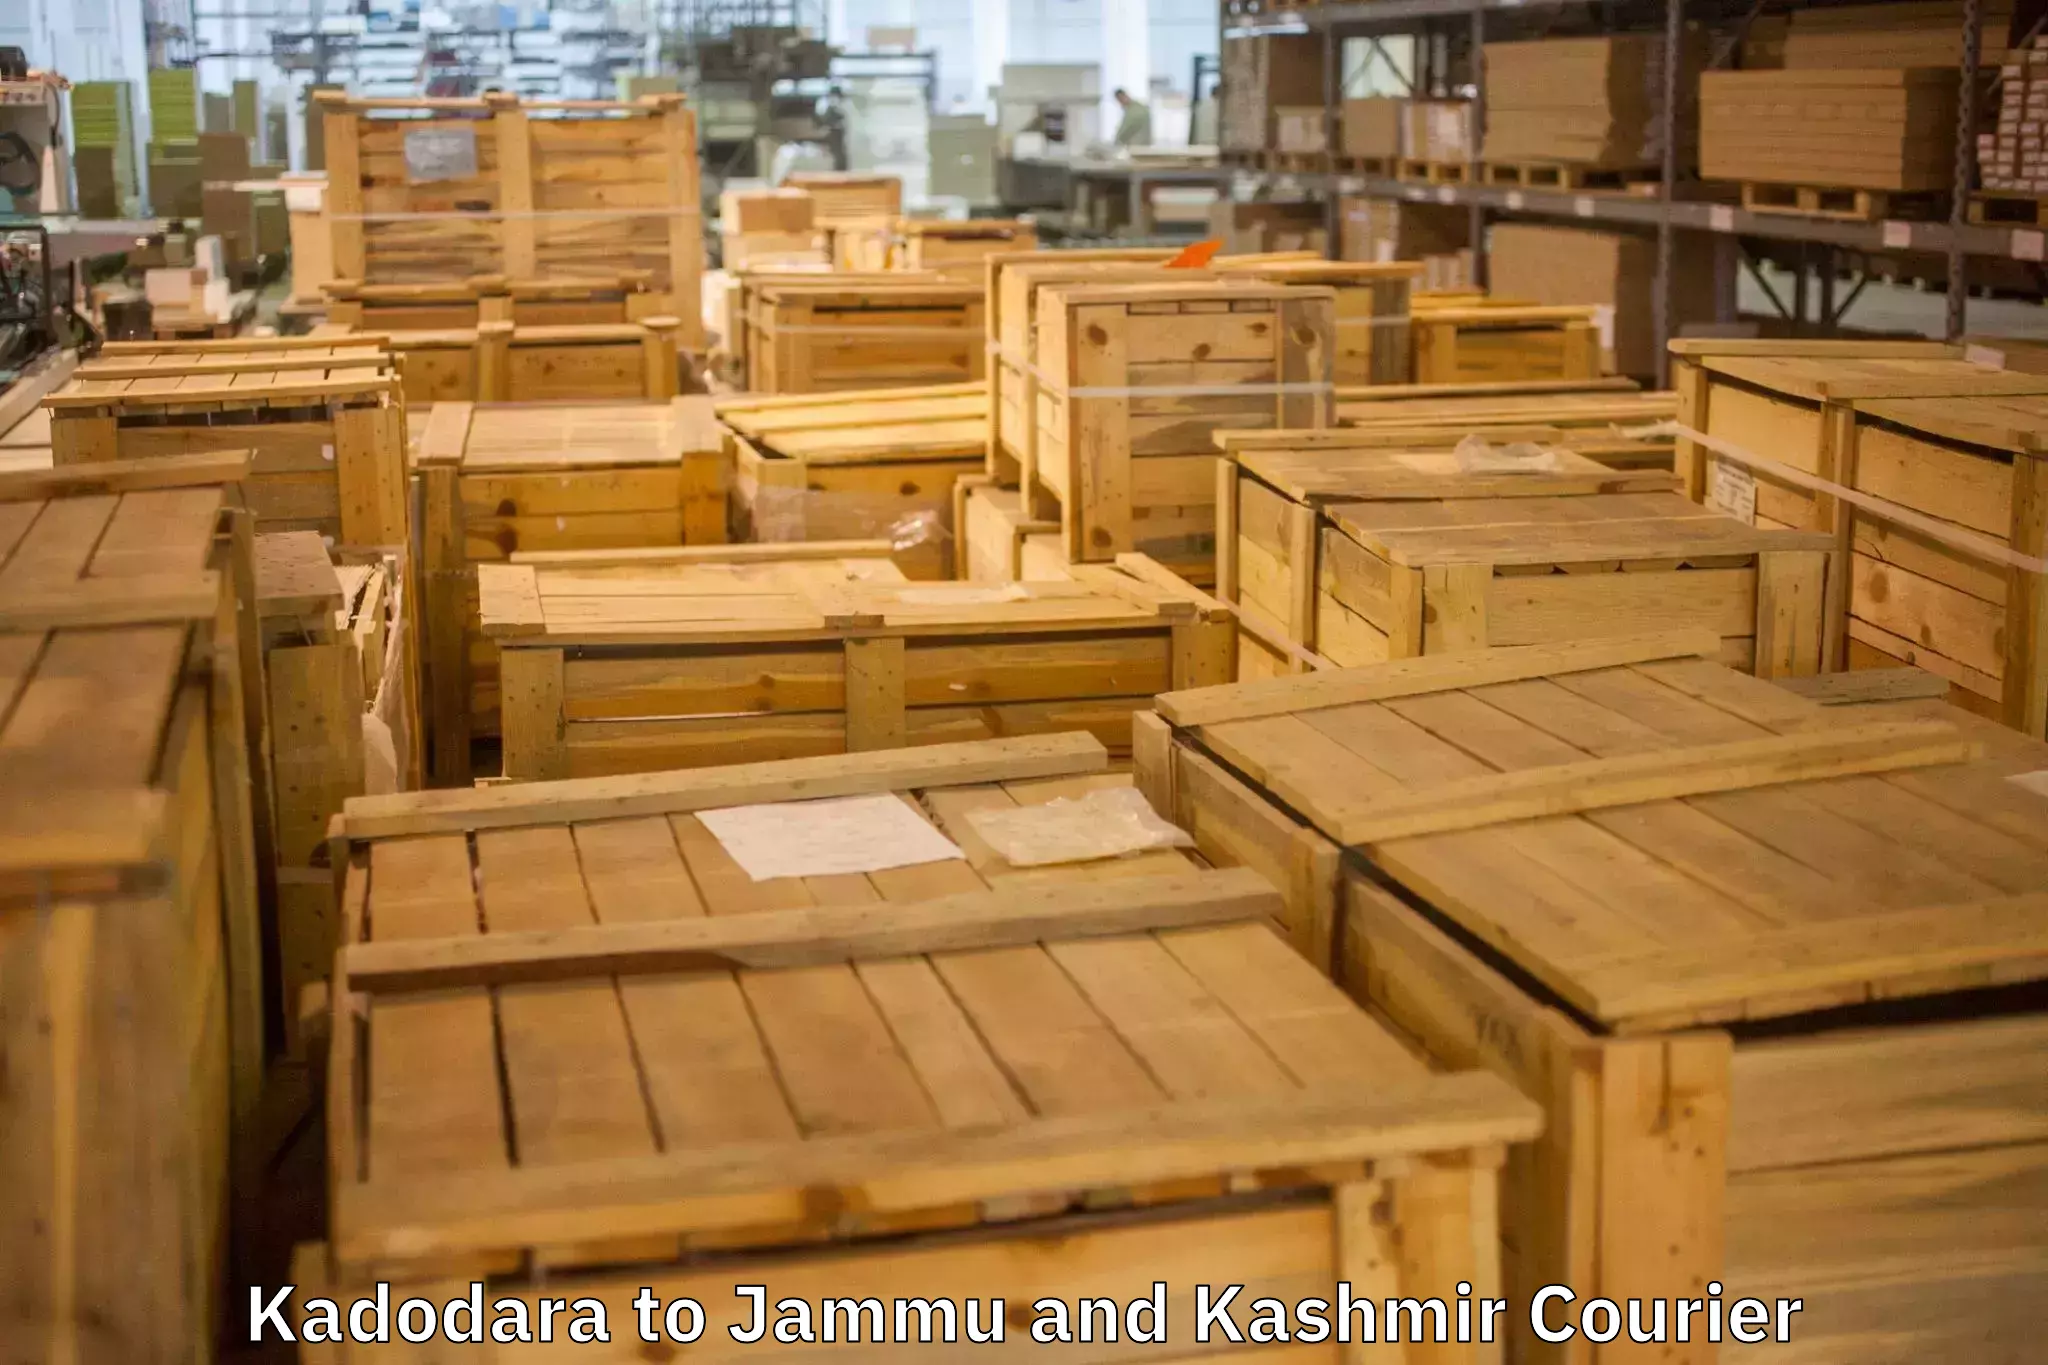 Customized moving solutions Kadodara to Jammu and Kashmir